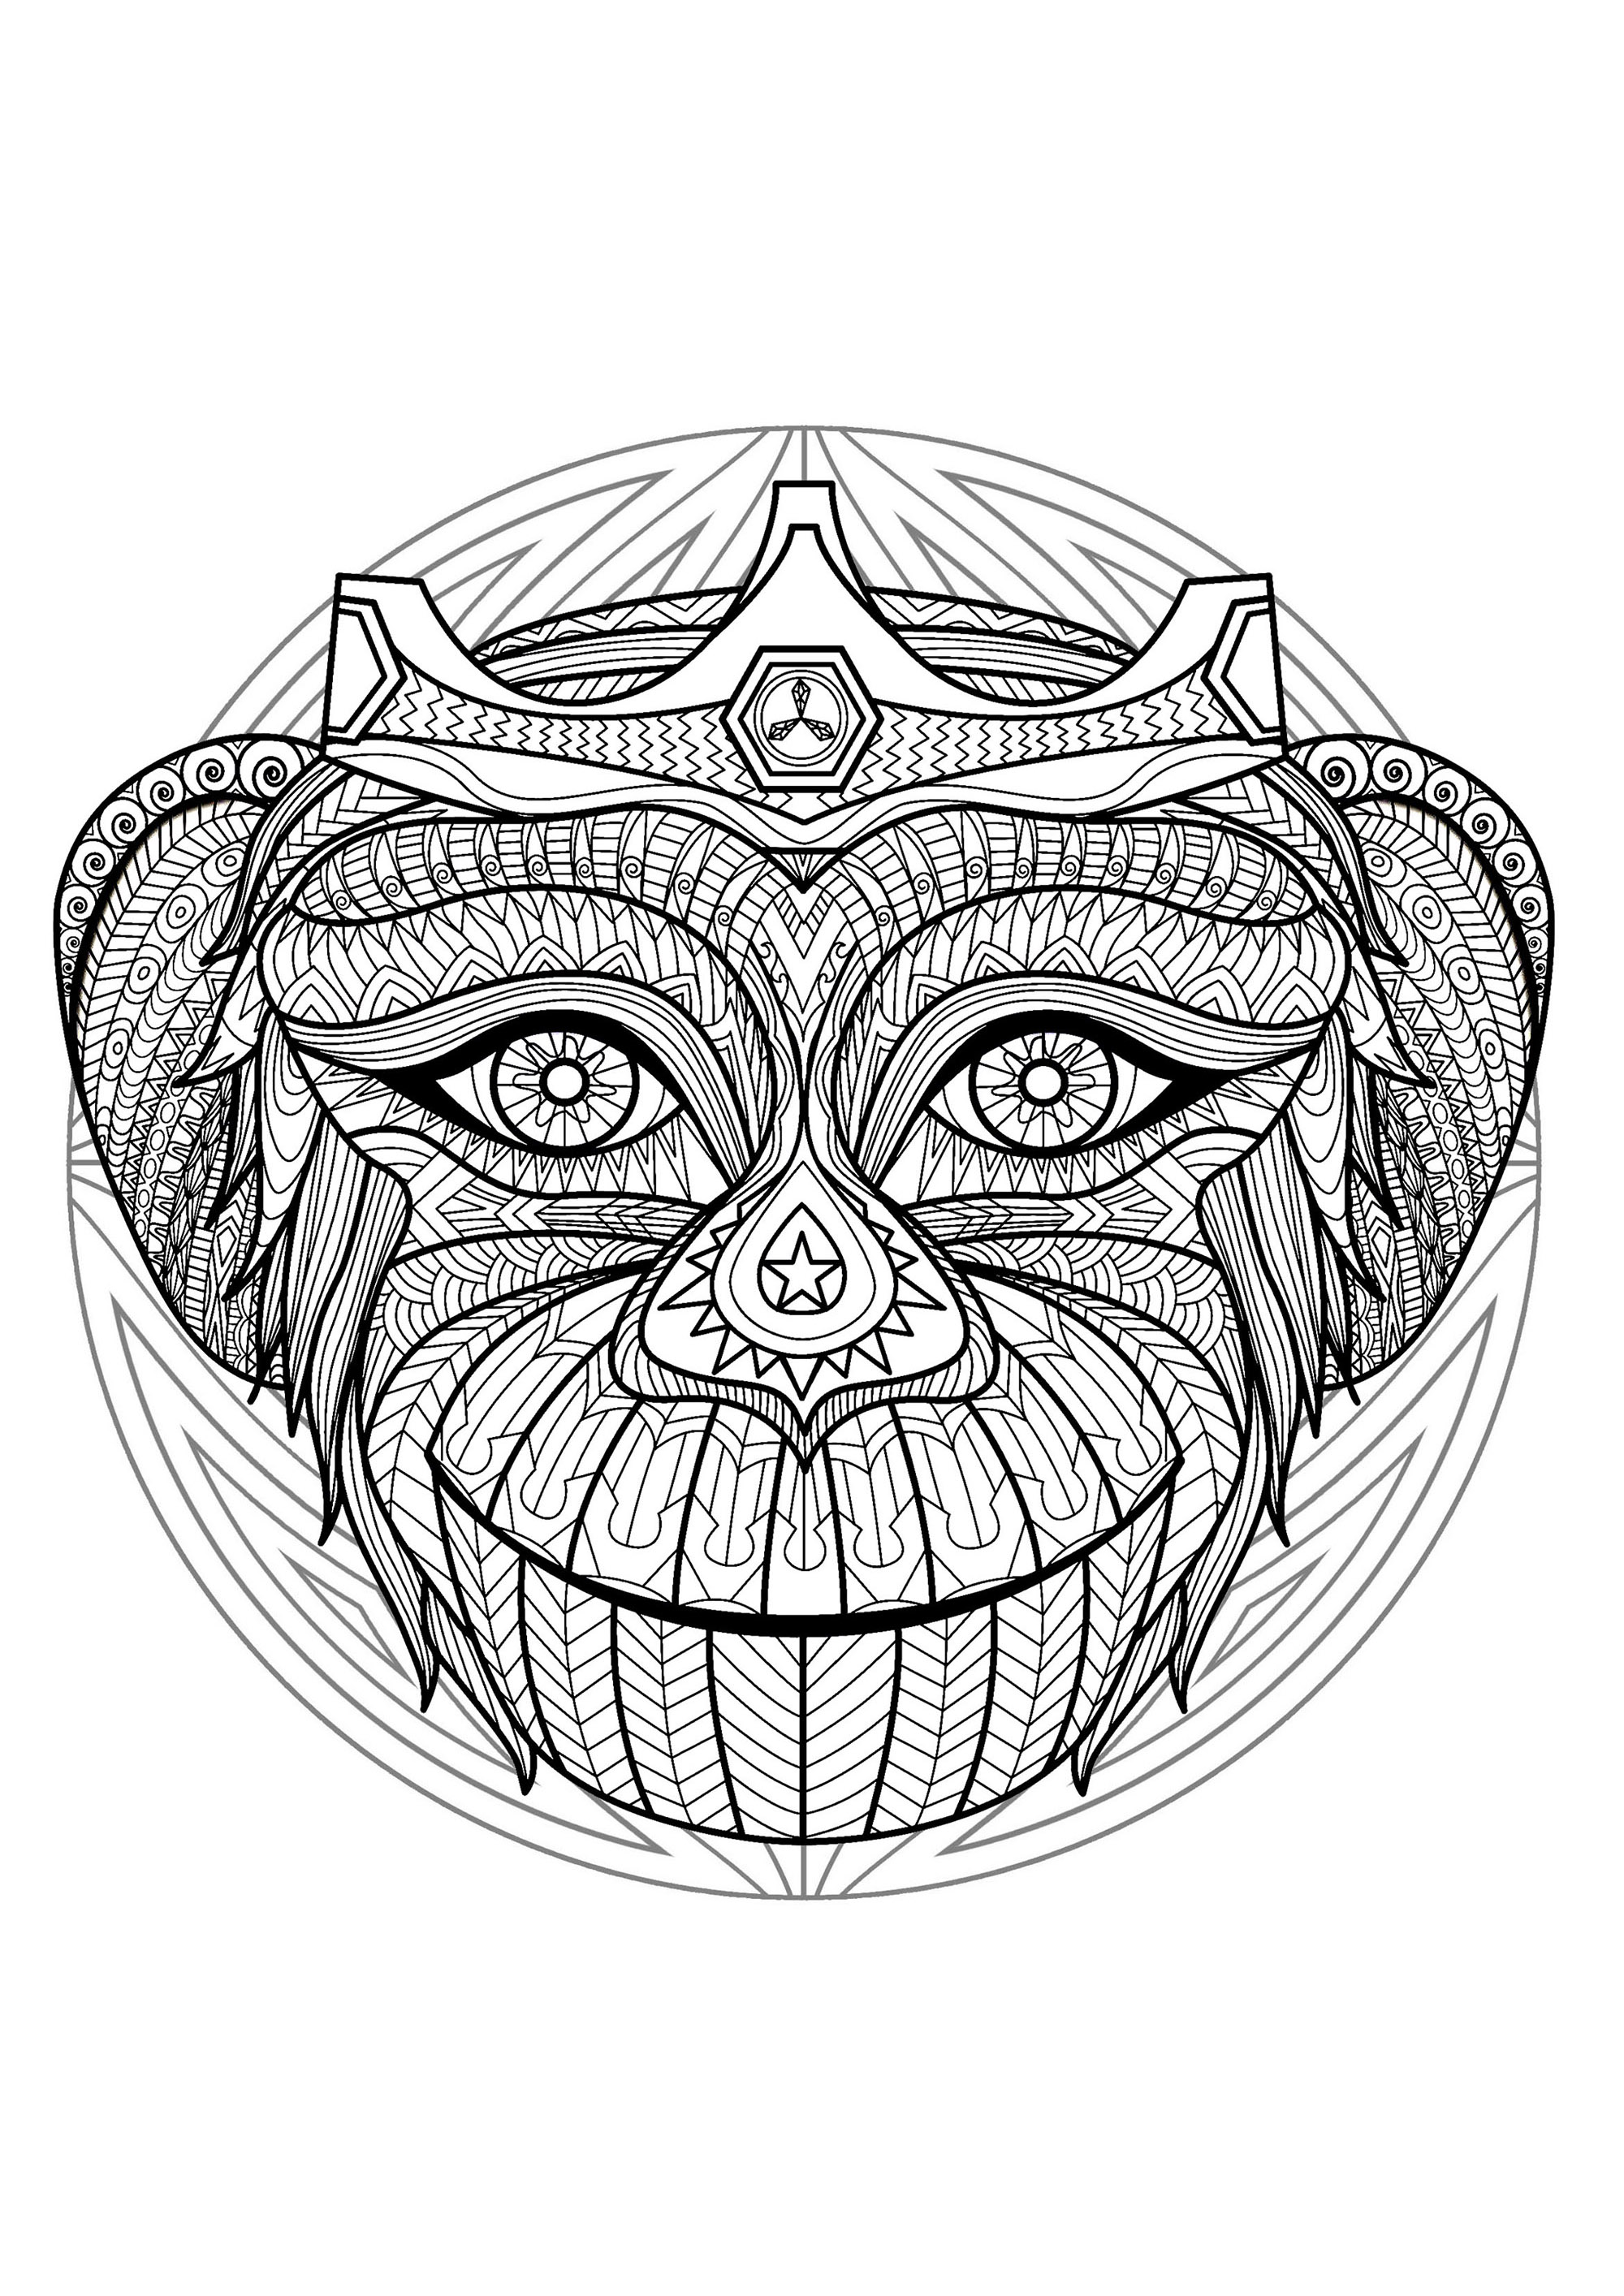 Mandala e testa di scimmia. Tanti piccoli dettagli e aree piuttosto ridotte, per un mandala molto originale e armonioso.